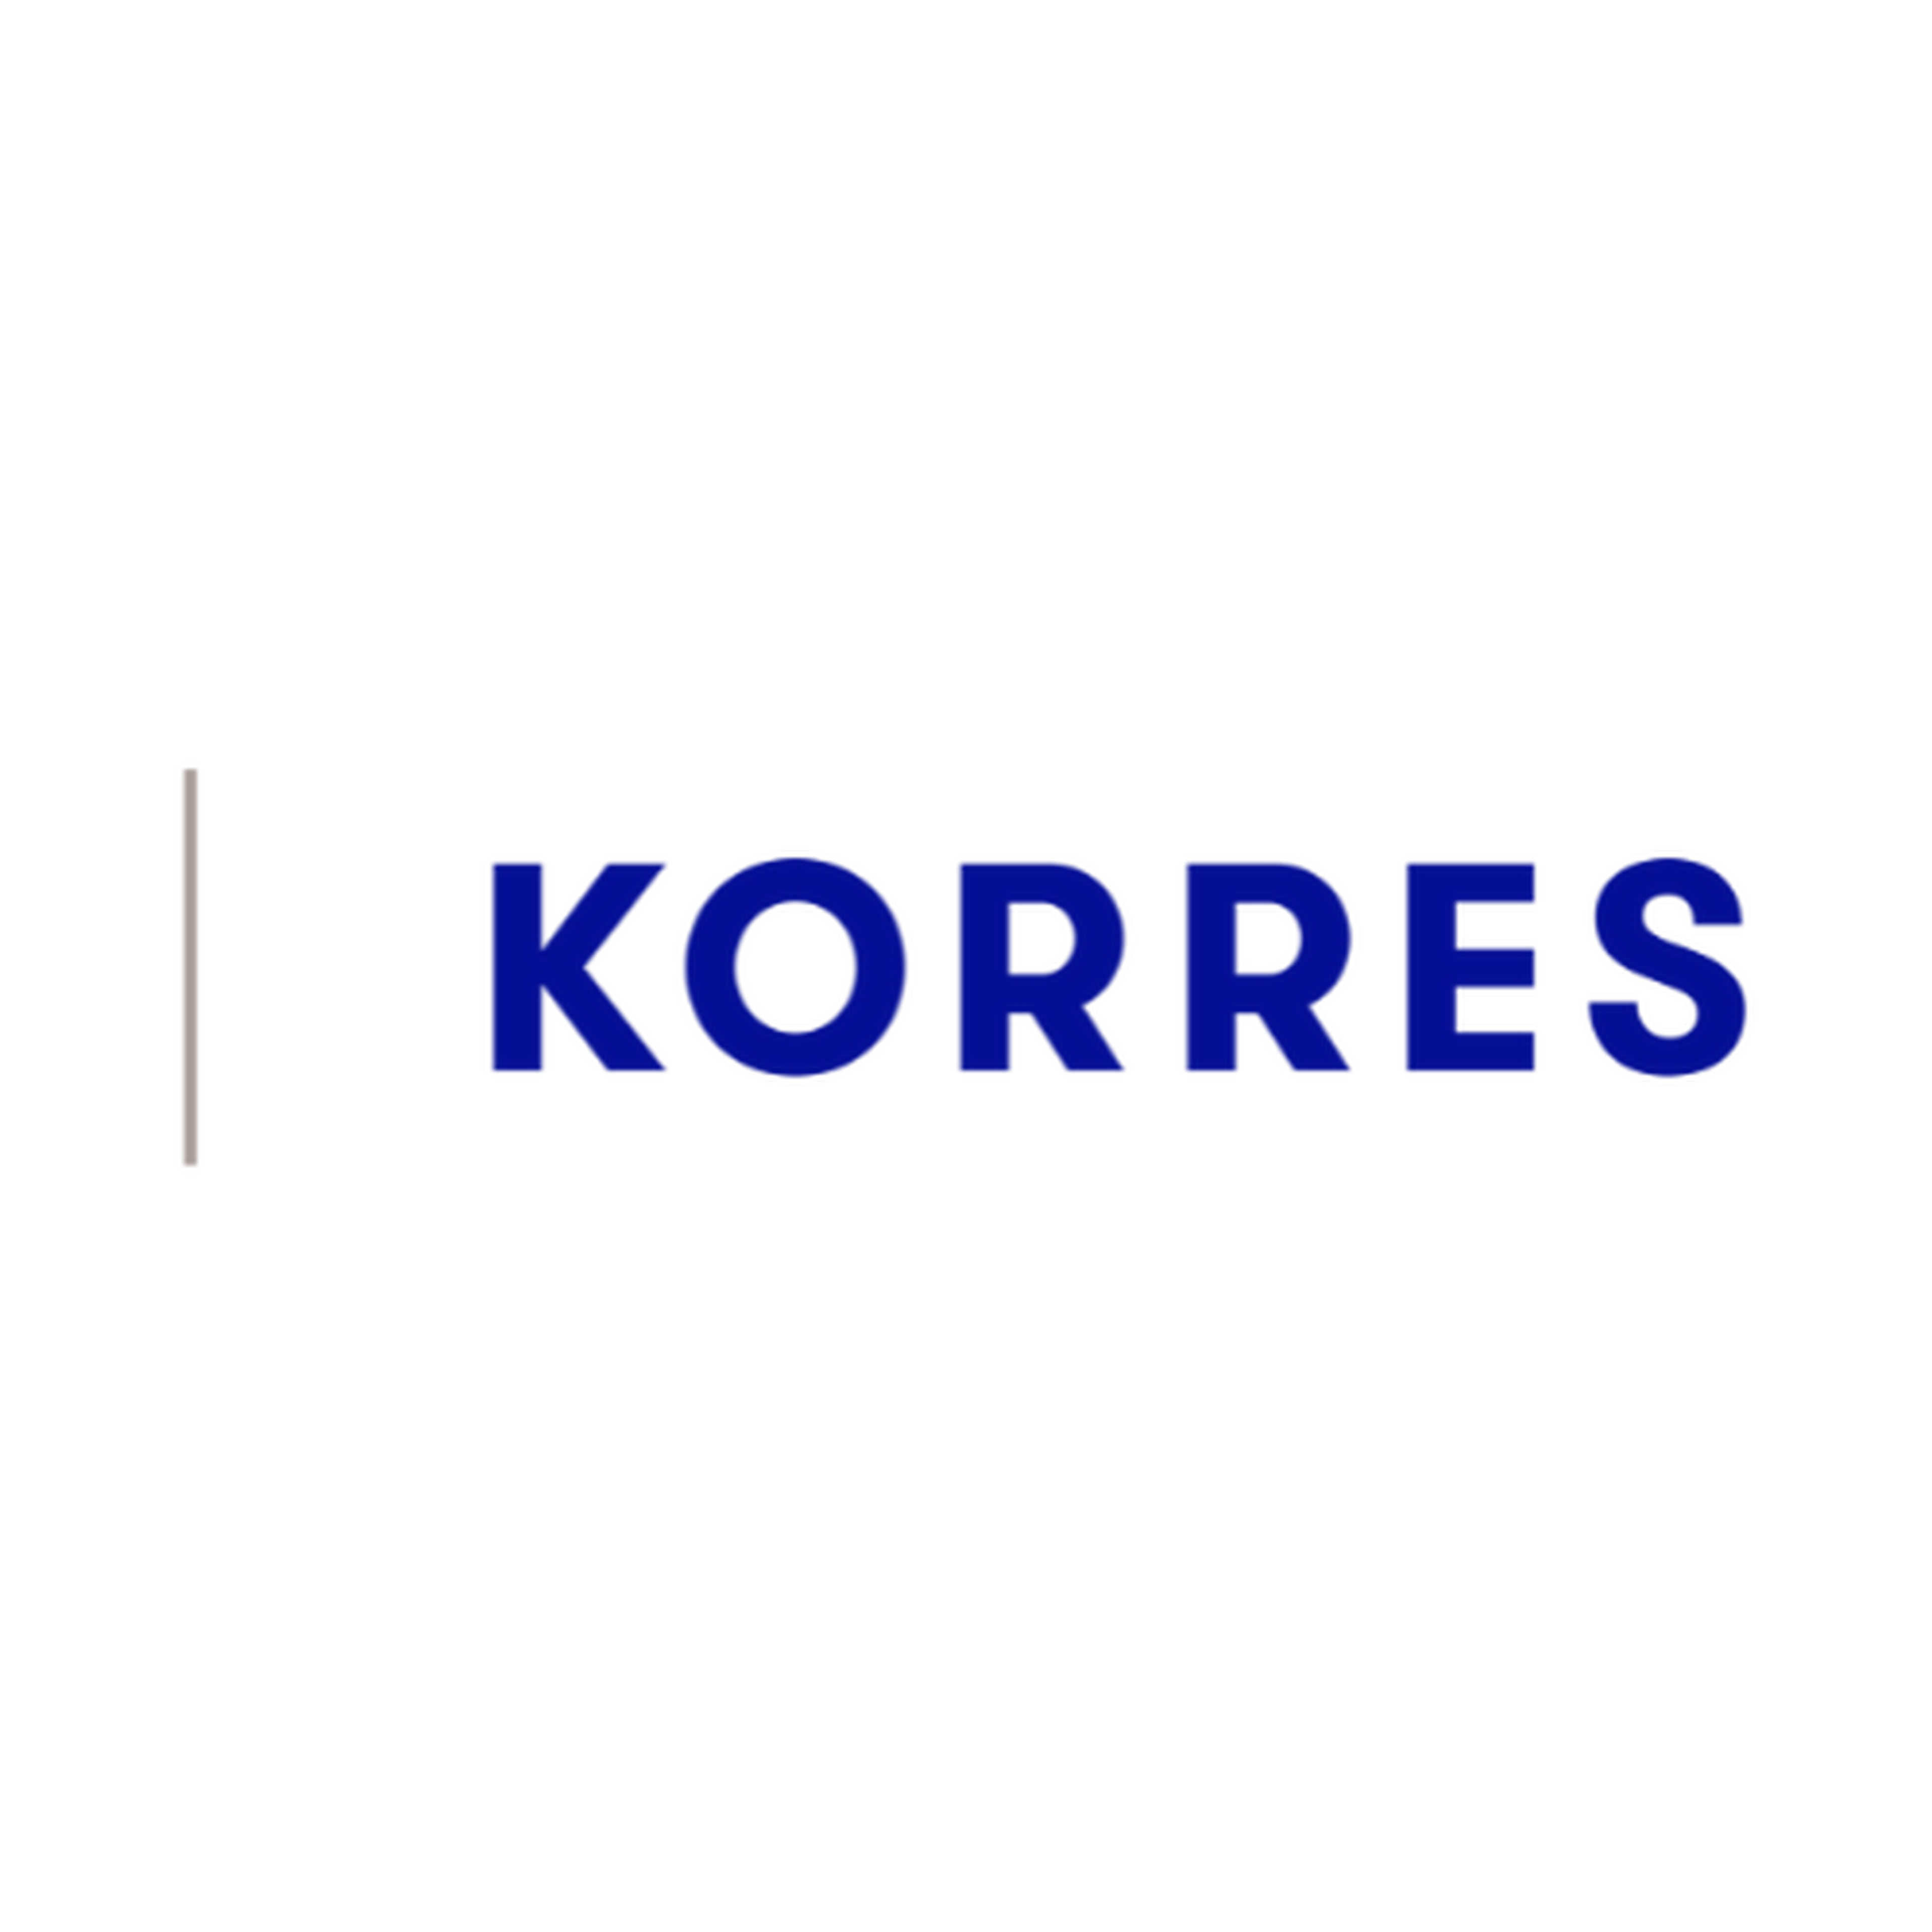 KORRES logotype